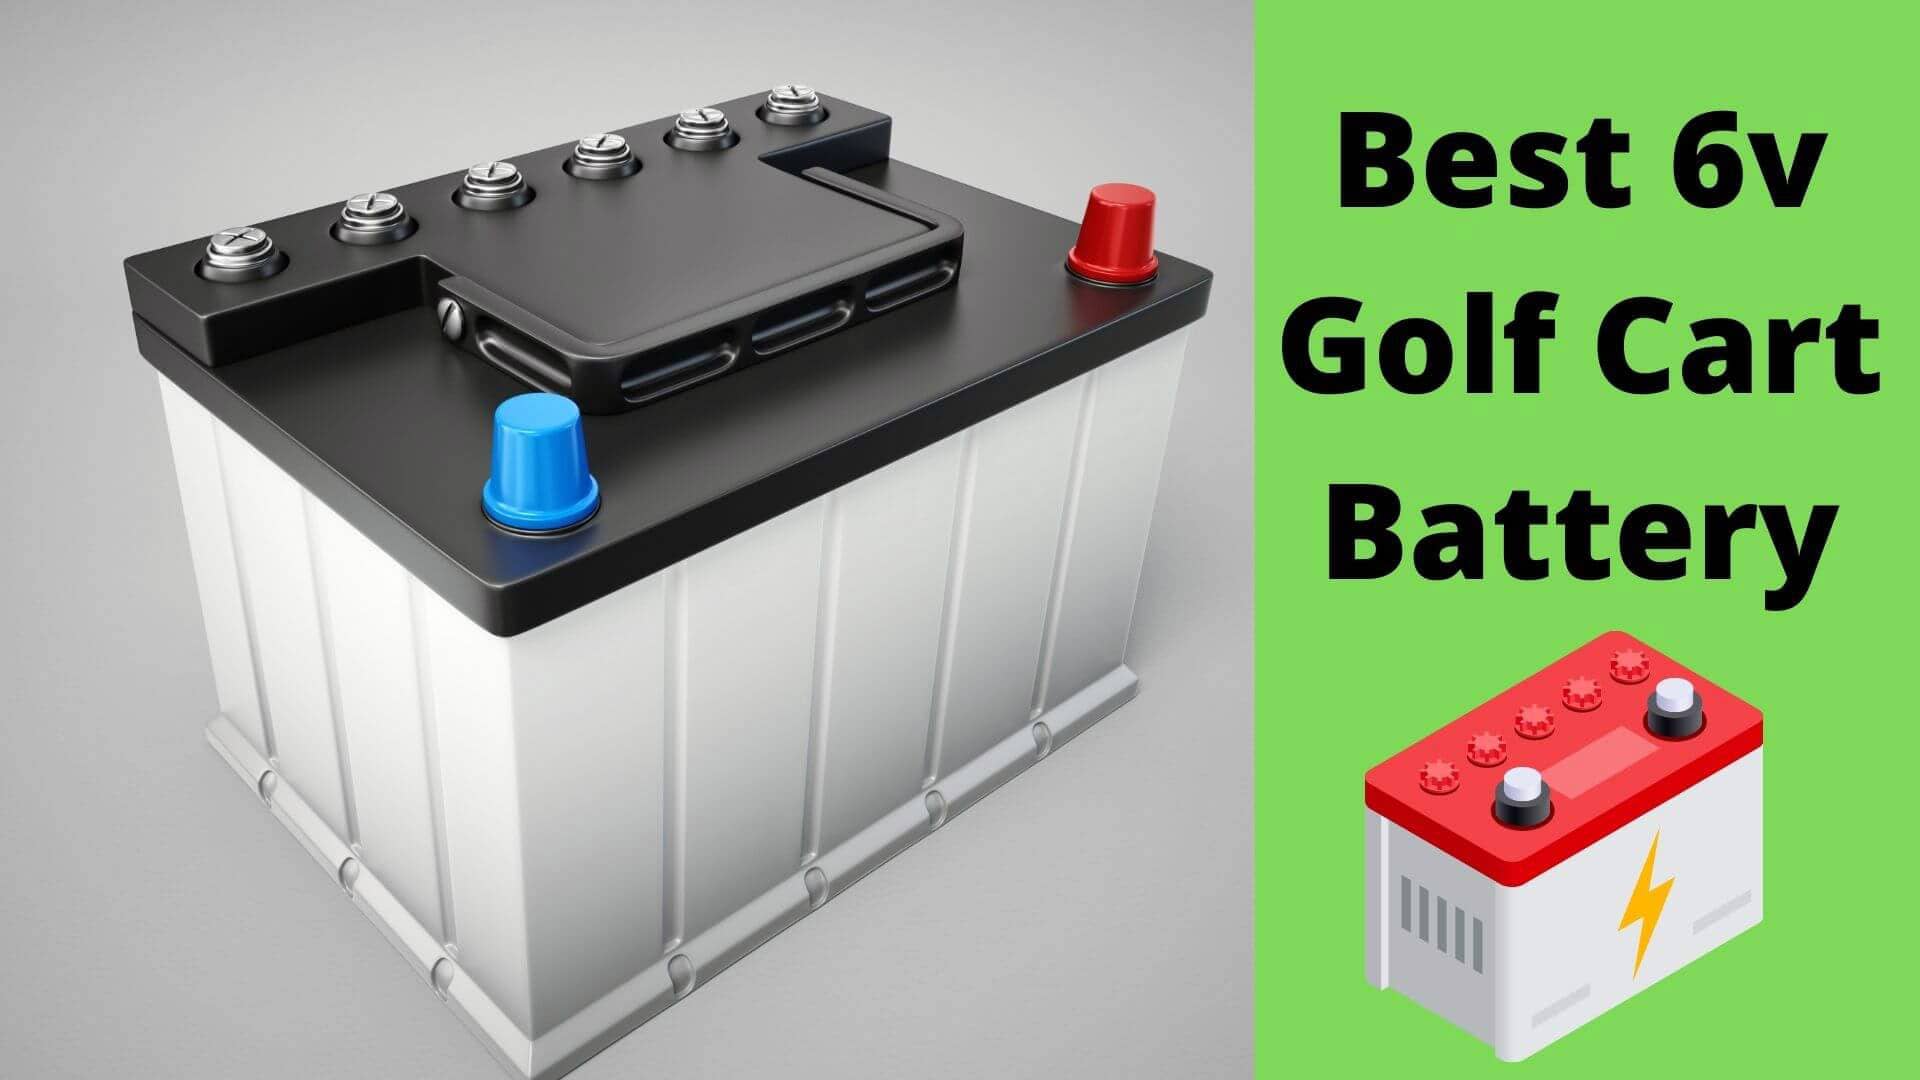 Best 6v Golf Cart Battery